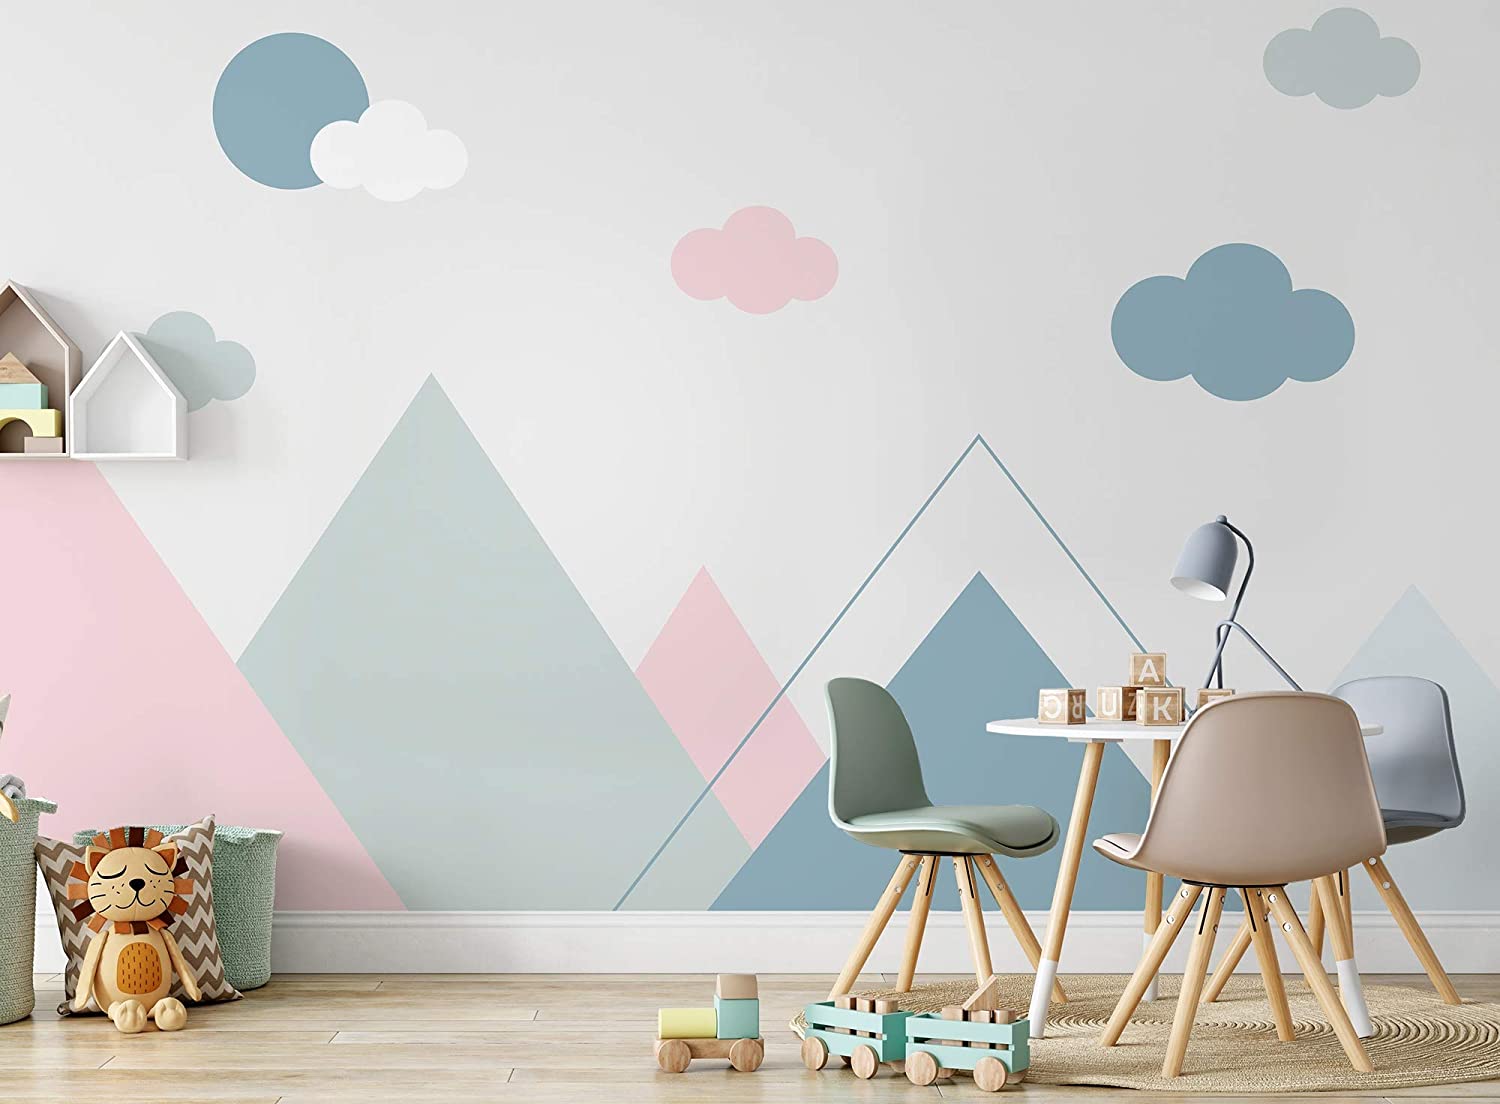 Top 5 Peel And Stick Wallpaper Companies For Cute Kids Wallpaper - Baggout